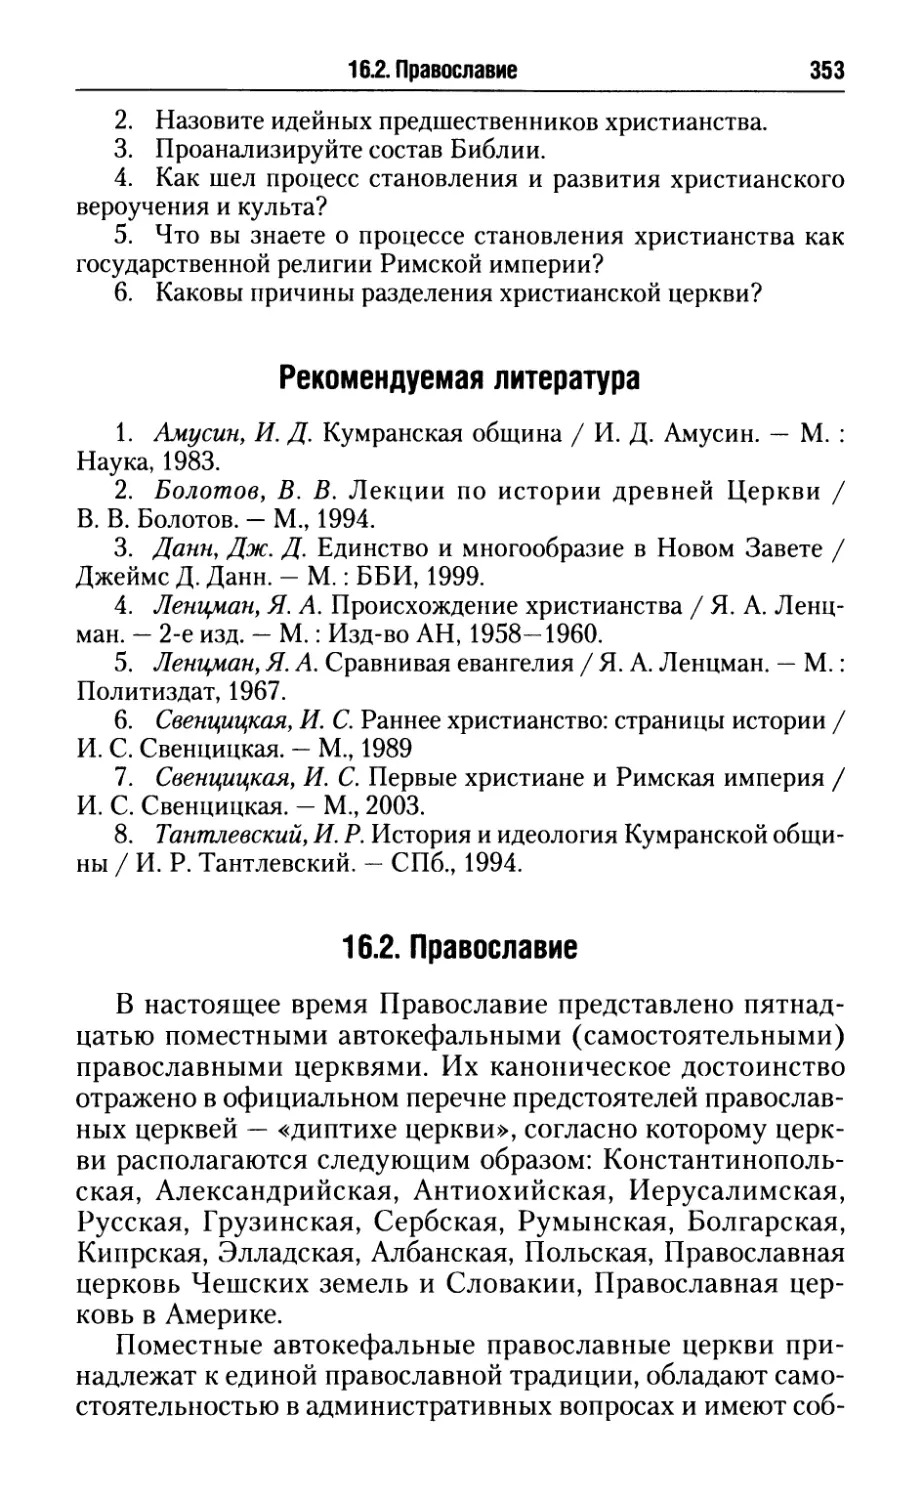 Рекомендуемая литература
16.2. Православие